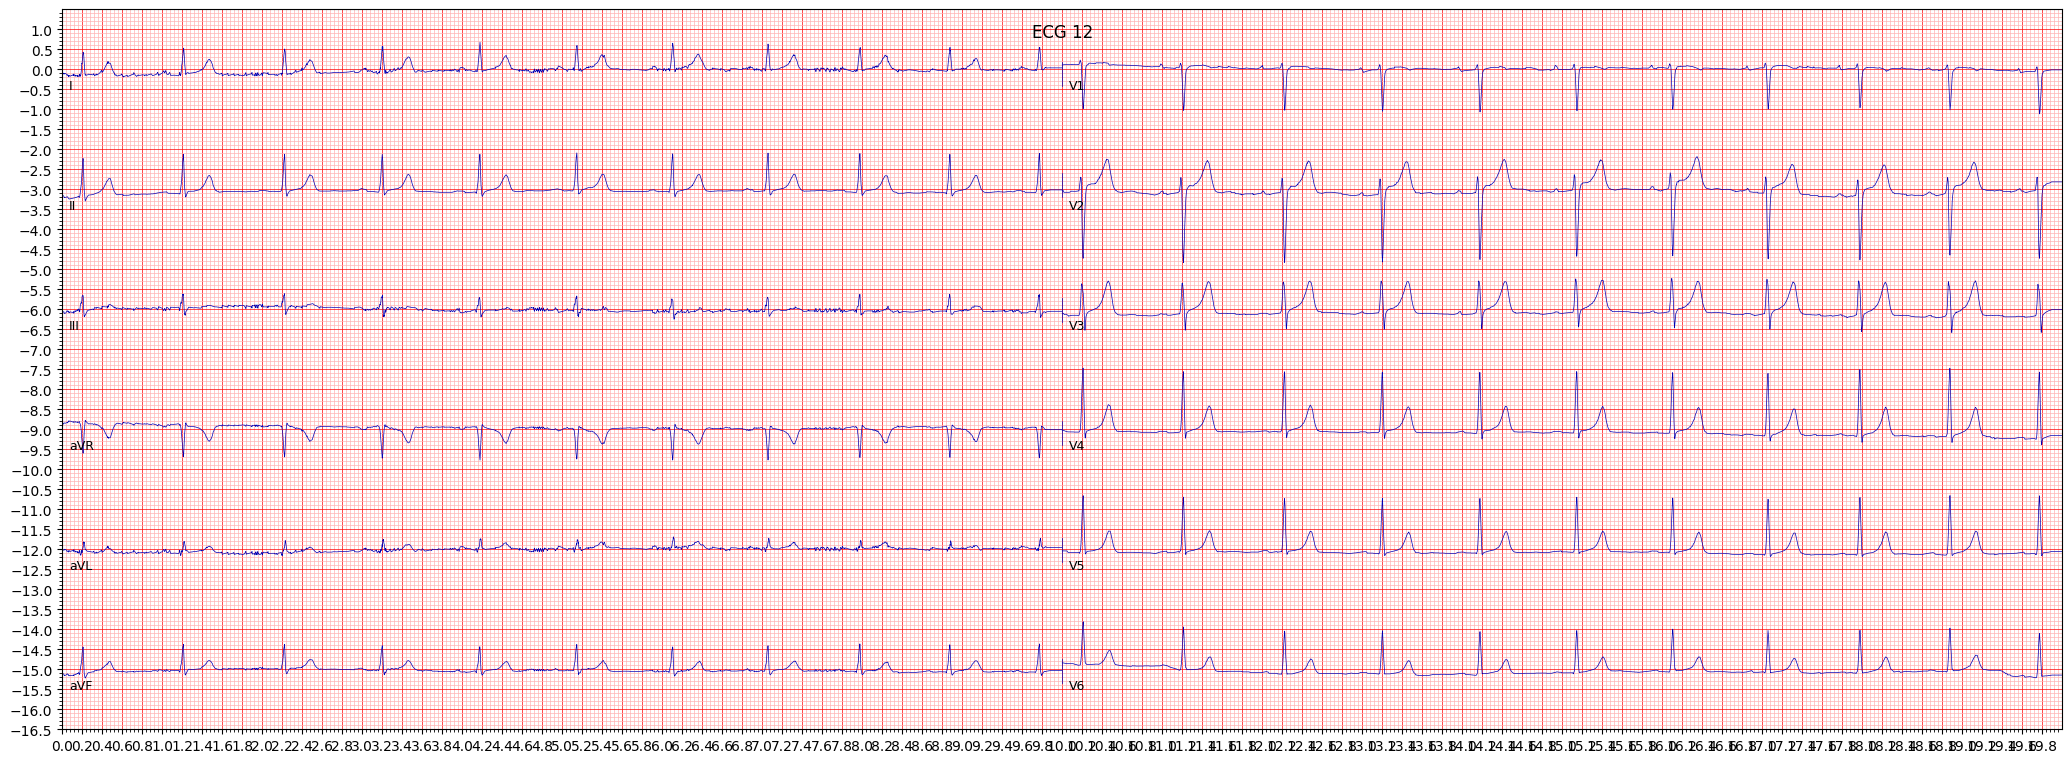 Normal ECG (NORM) example 124